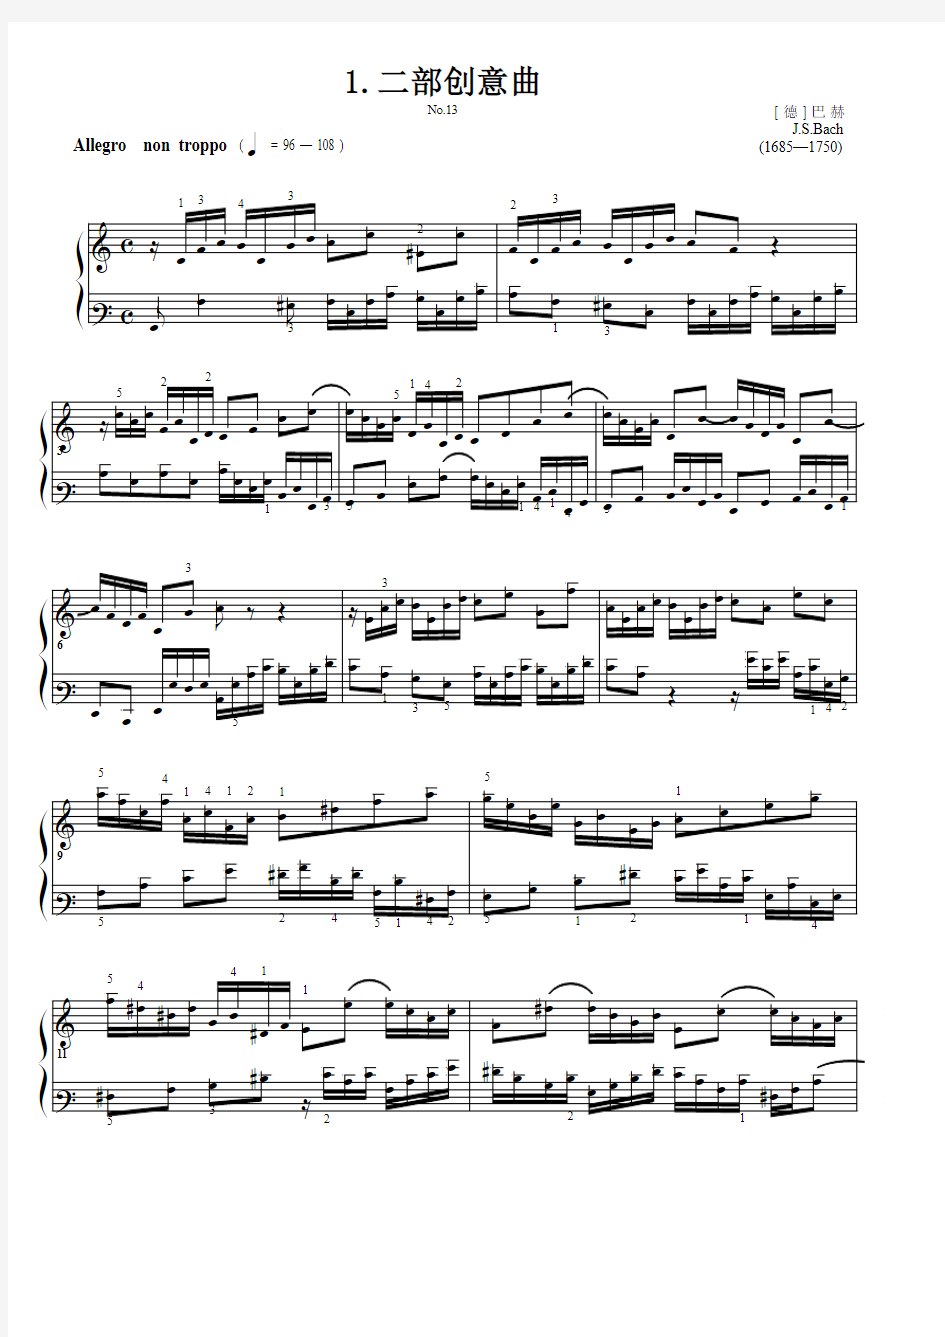 二部创意曲.No.13 巴 赫 原版 五线谱 钢琴谱 正谱  乐谱